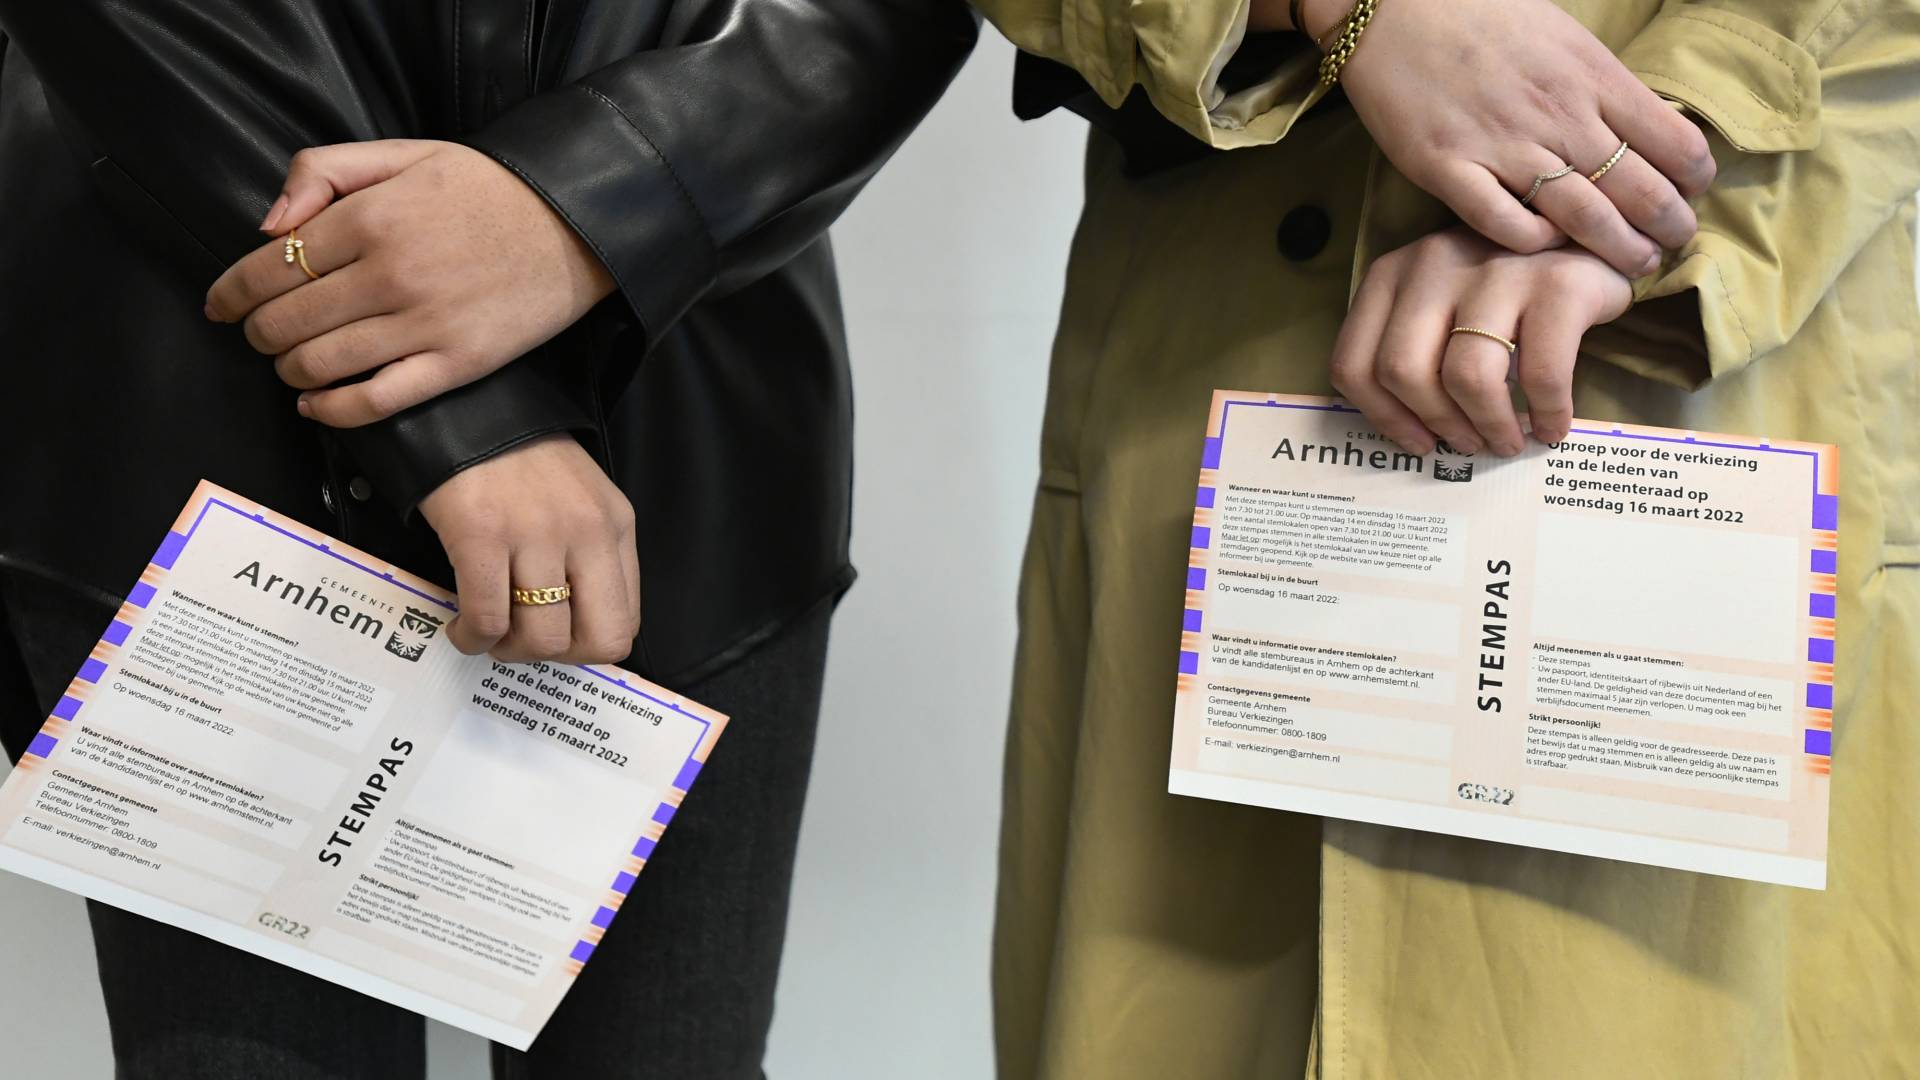 أبواب إقتراع لانتخابات البلديات في هولندا قد فتحت